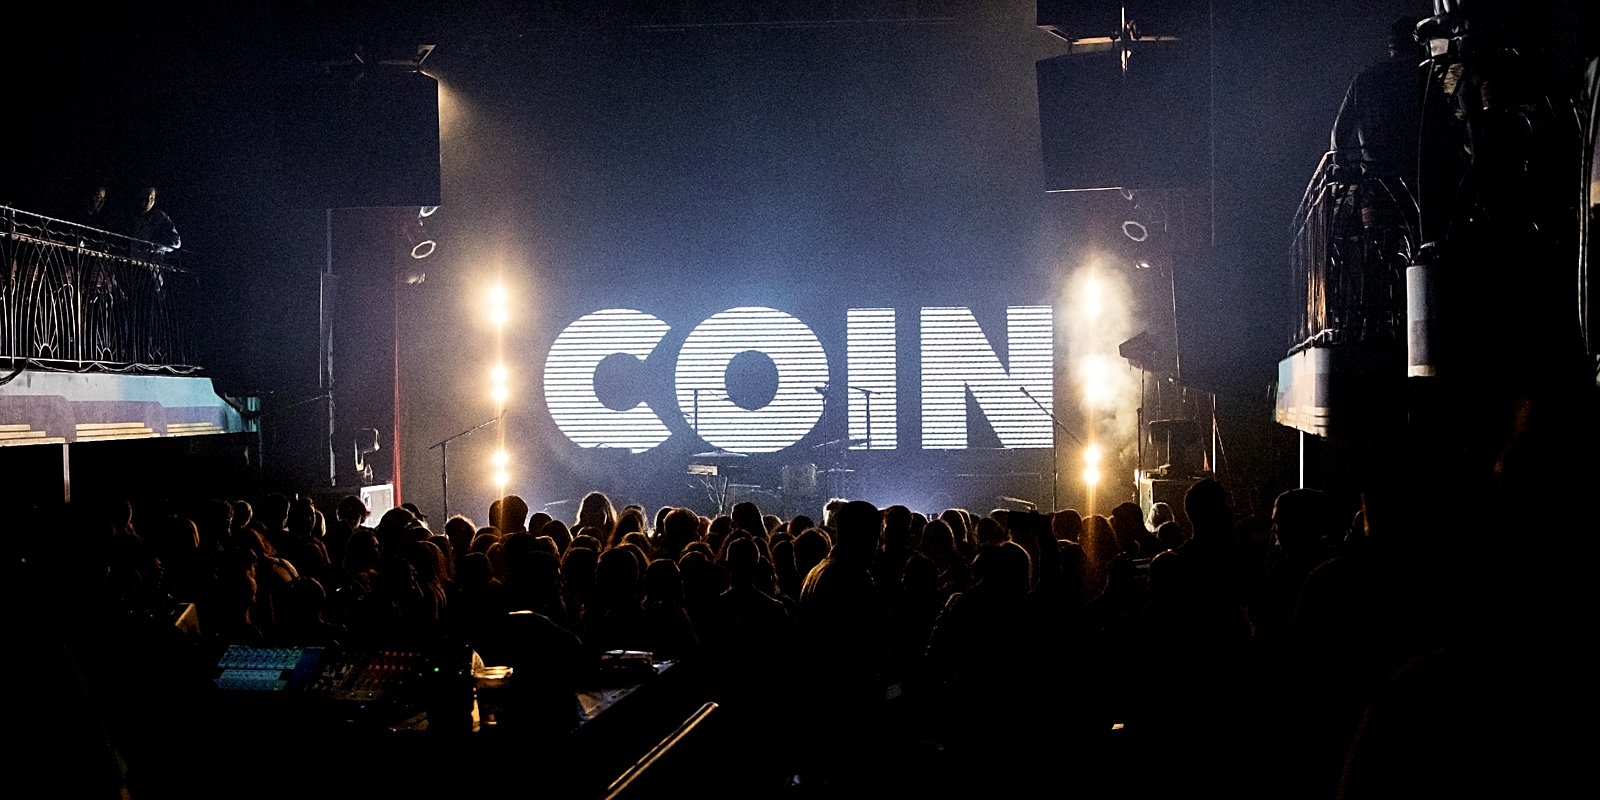 coin concert slc